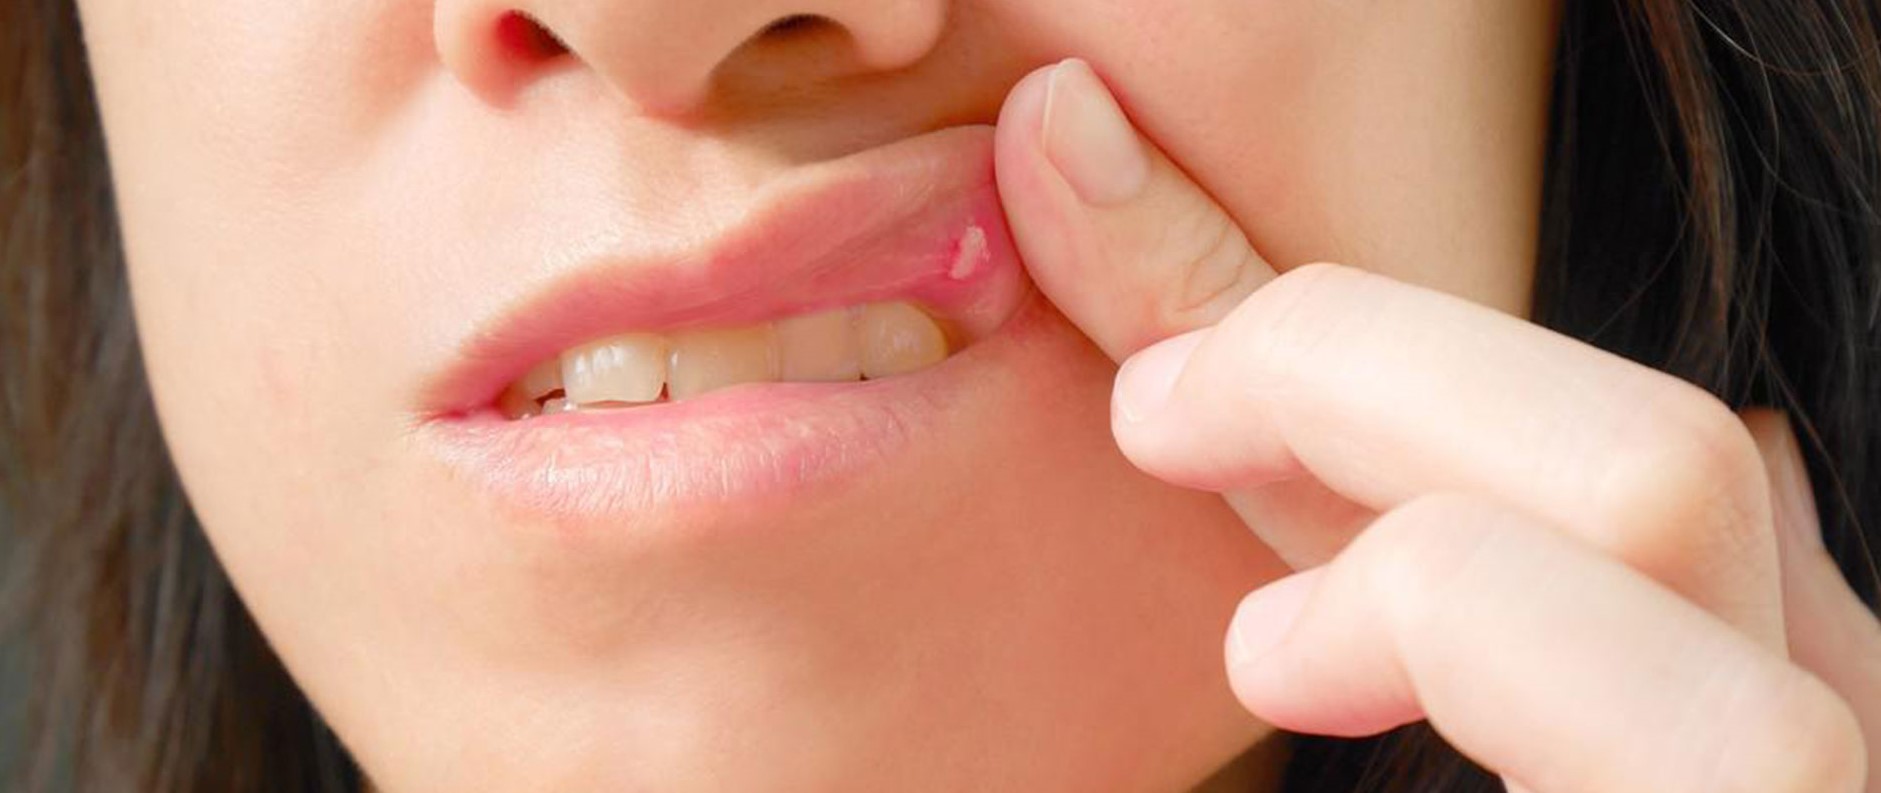 Стоматит во рту у взрослых  как лечить стоматит на губе, языке?